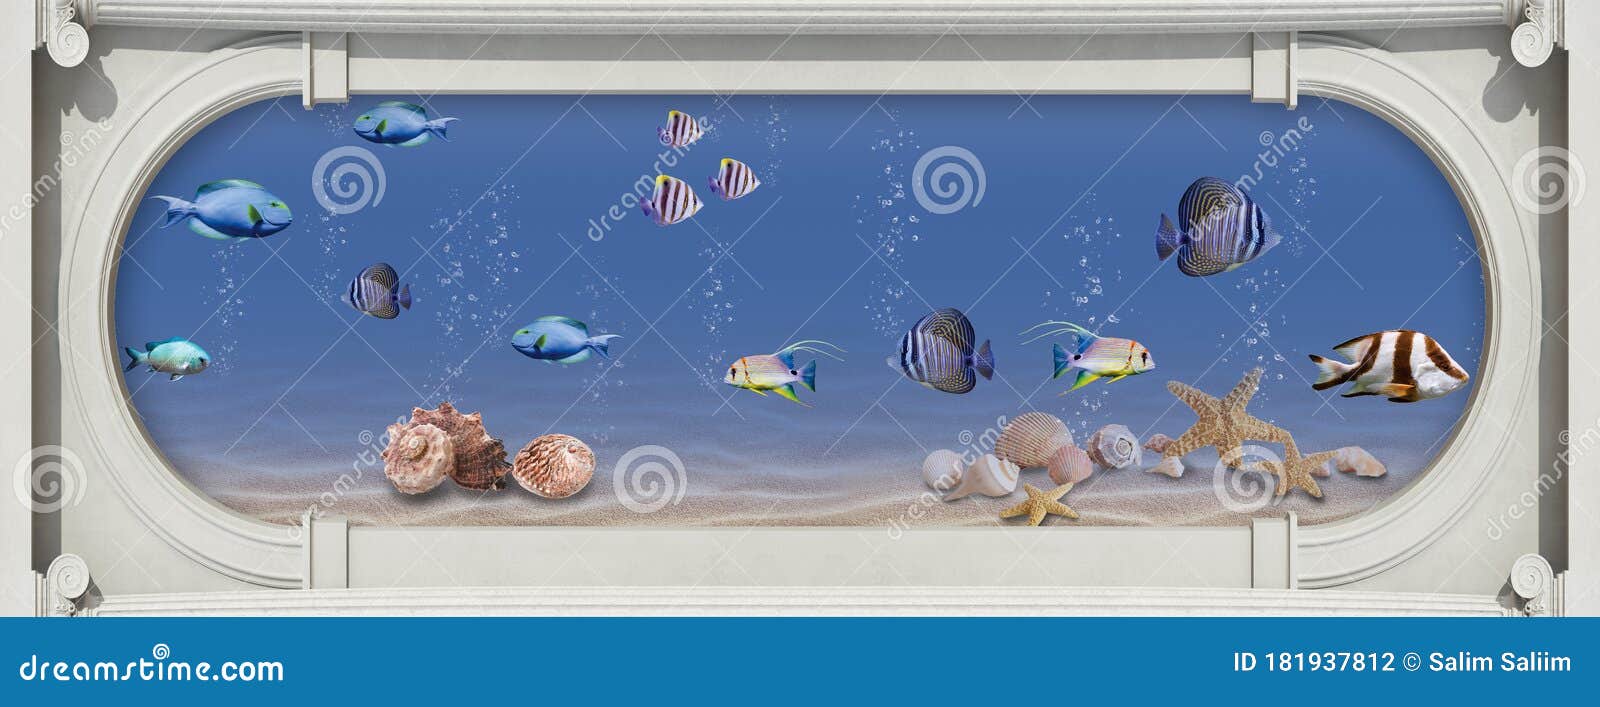 3d Aquarium Wallpaper For Walls Image Num 44